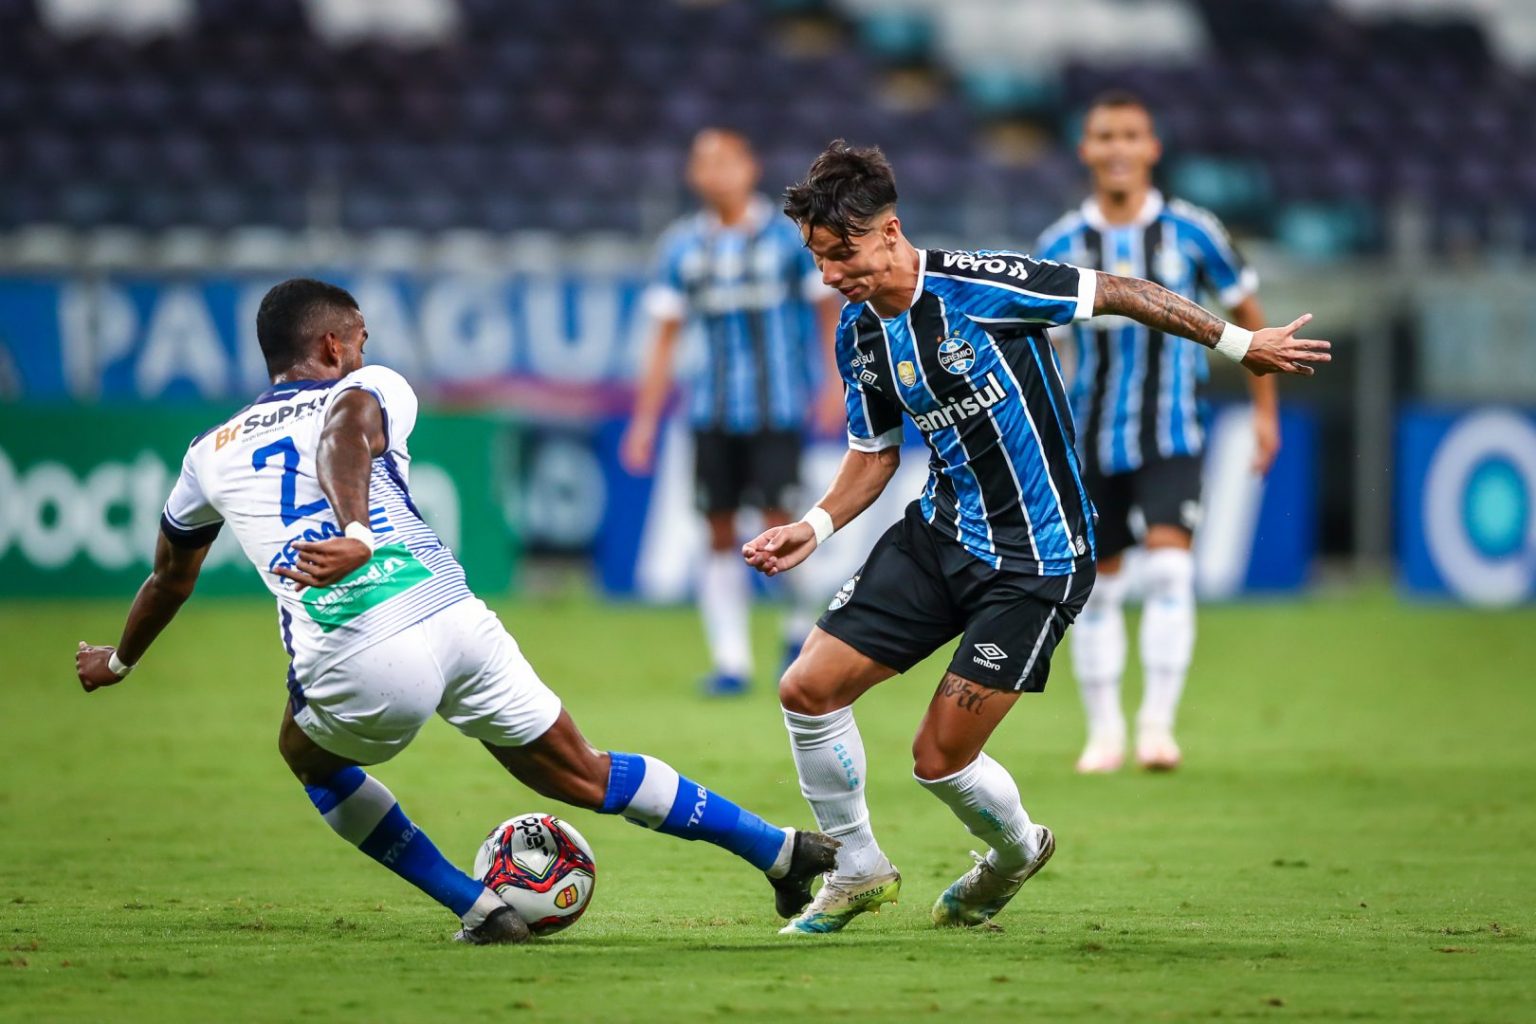 Grêmio vs ABC: A Clash of Titans in the Copa do Brasil